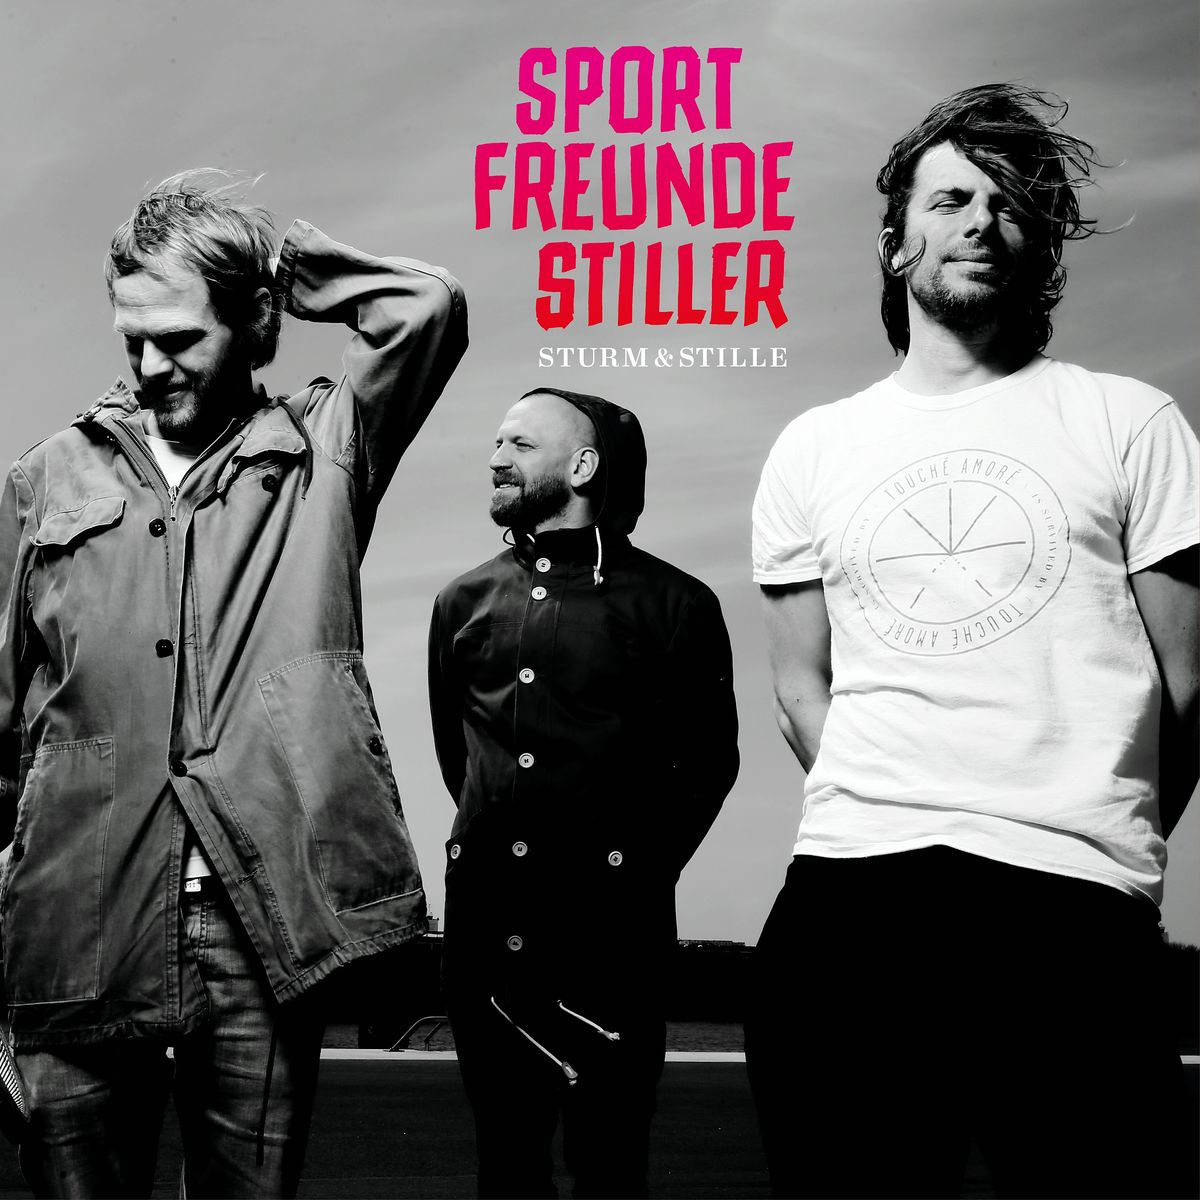 "Sturm & Stille" heißt das neue Album der Sportfreunde Stiller und wird am 07. Oktober 2016 bei Vertigo Berlin/Universal Music veröffentlicht.